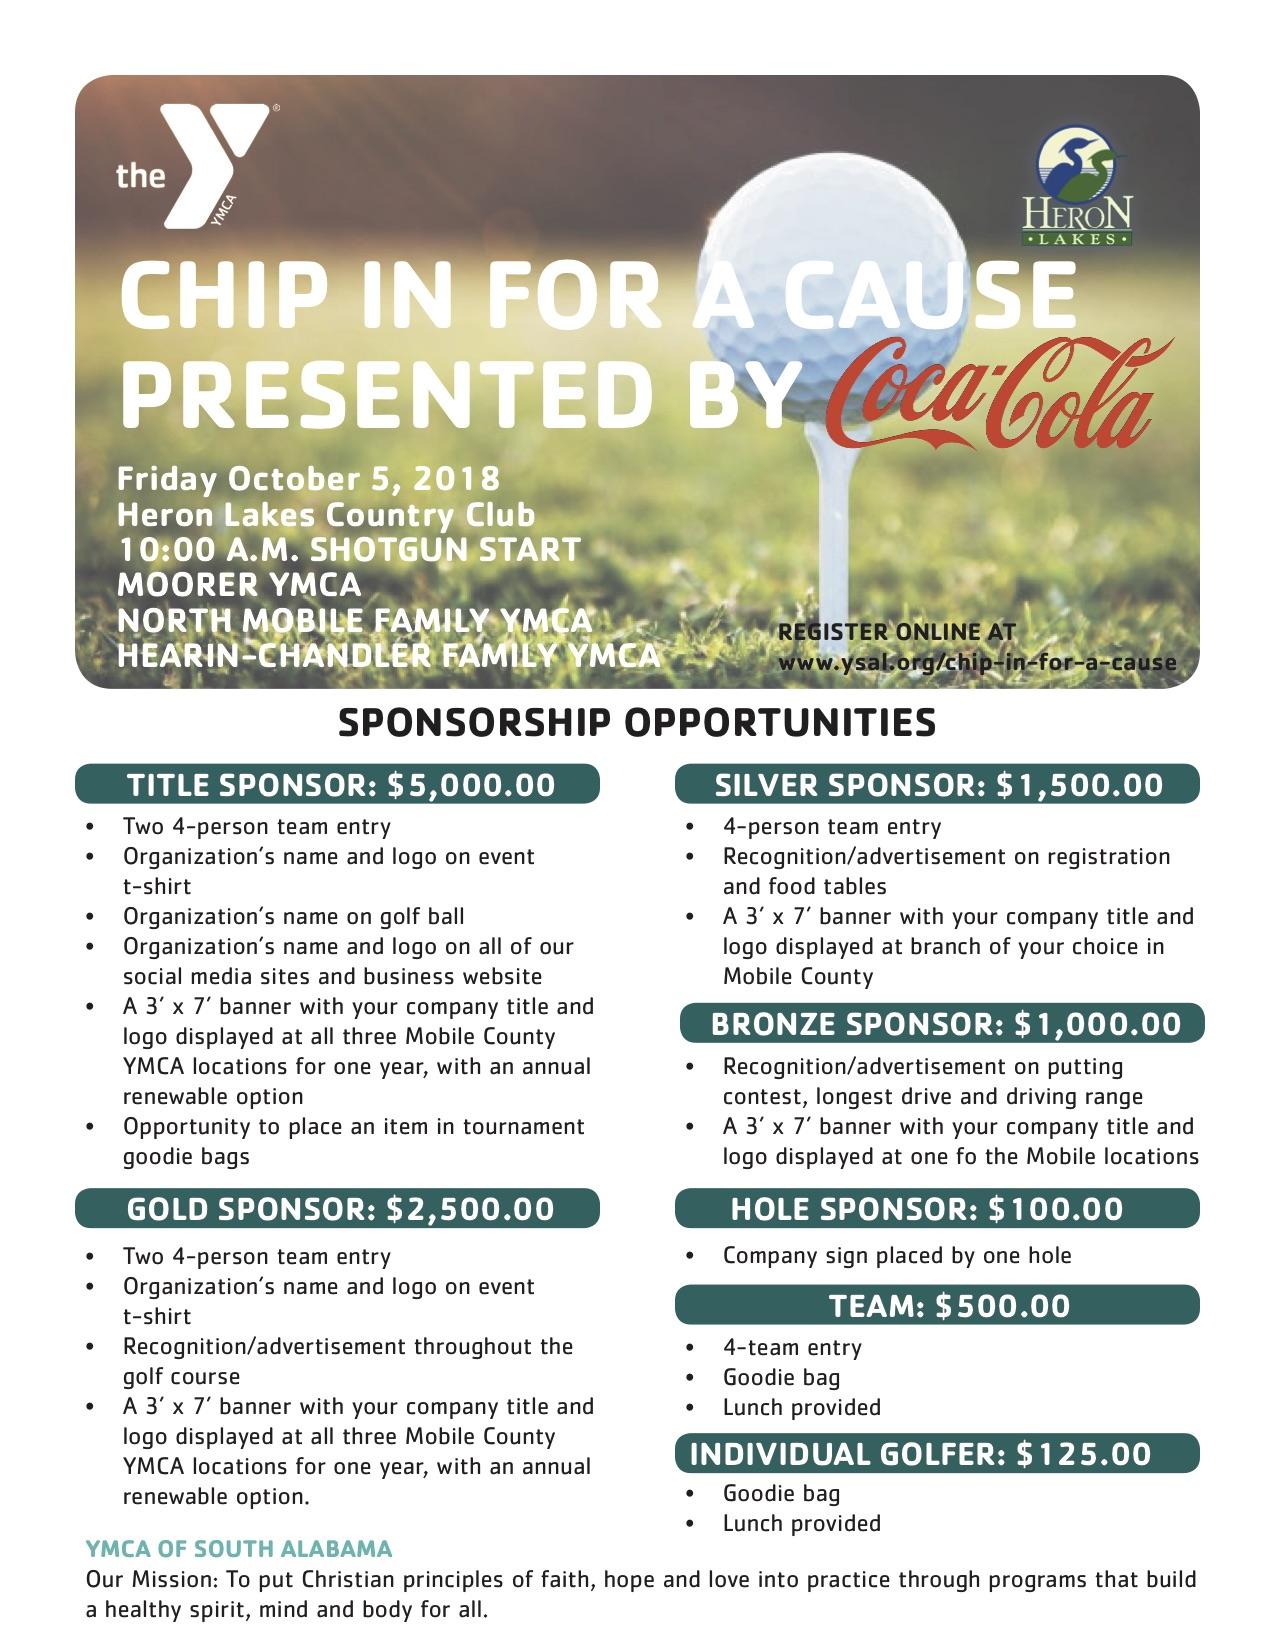 YMCA of South Alabama Golf Tournament presented by Coca-Cola